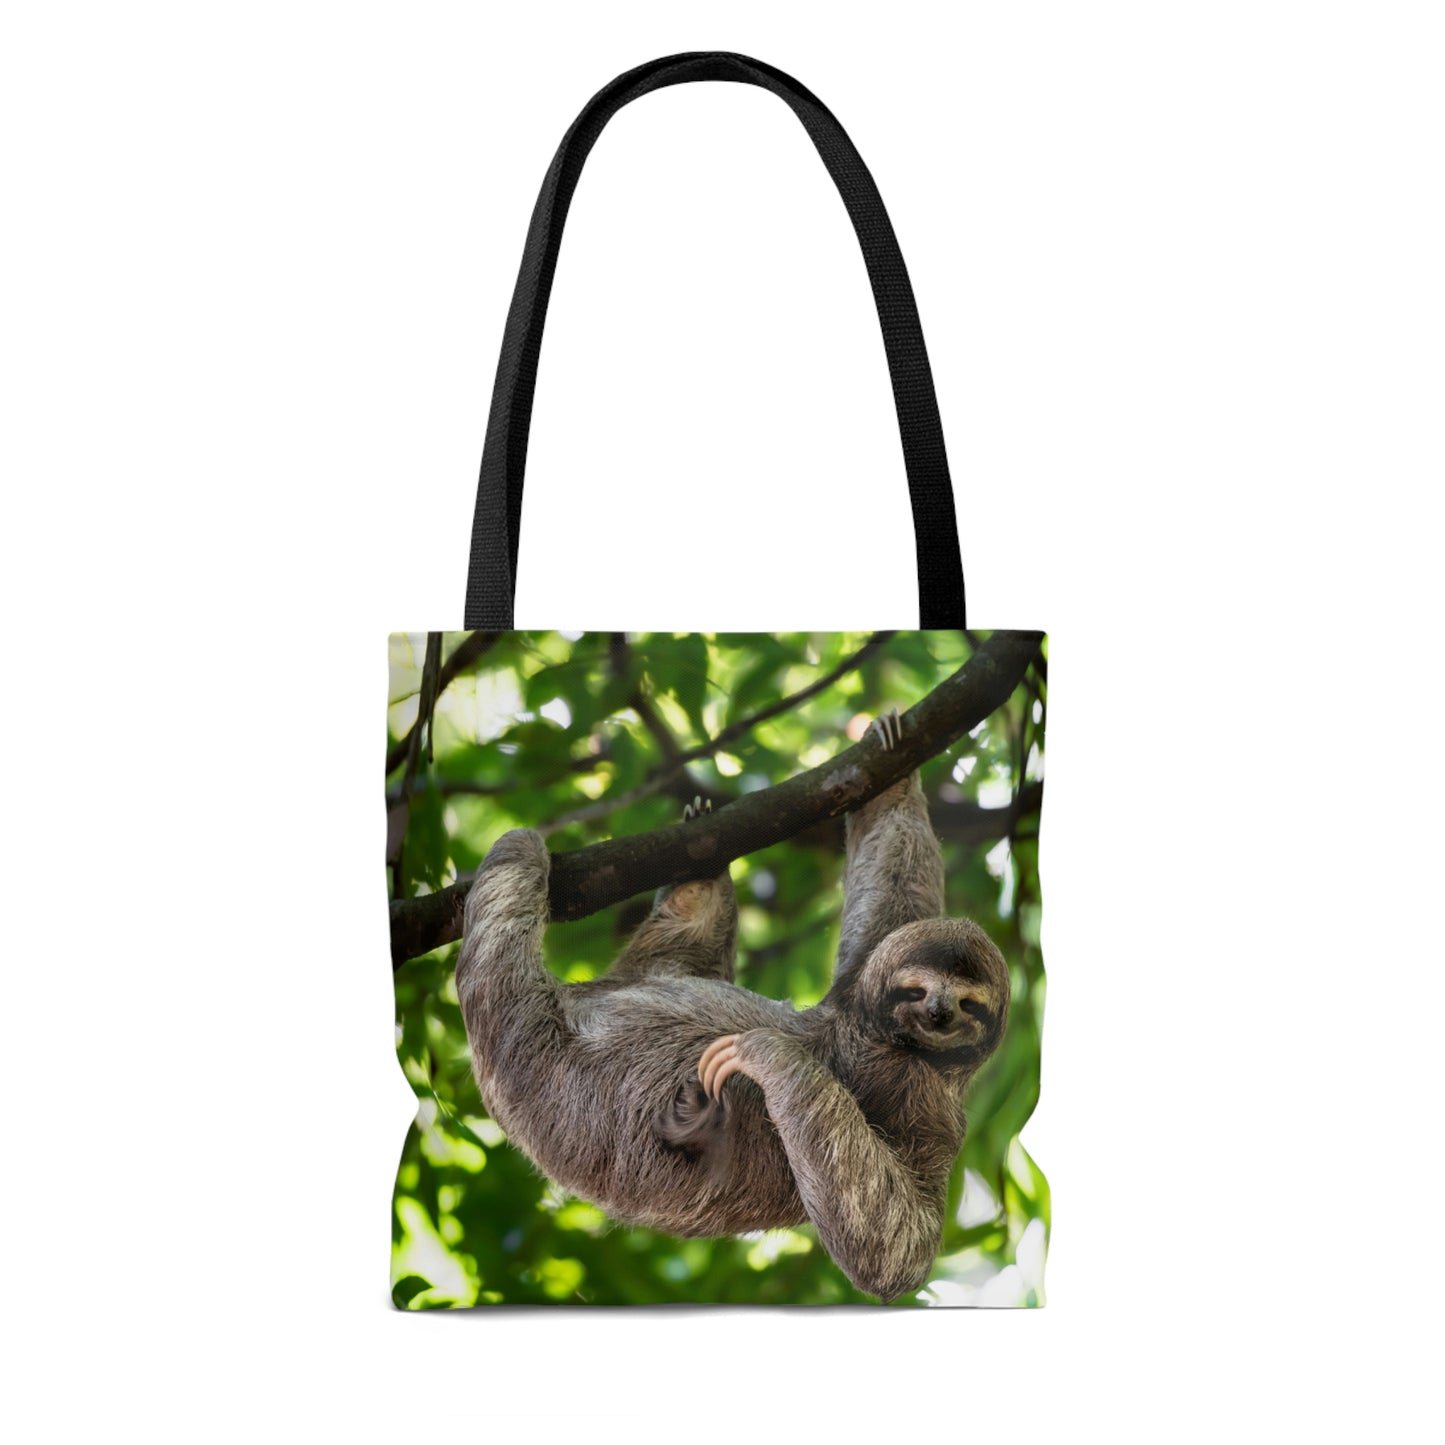 Cute Hanging Sloth Tote Bag